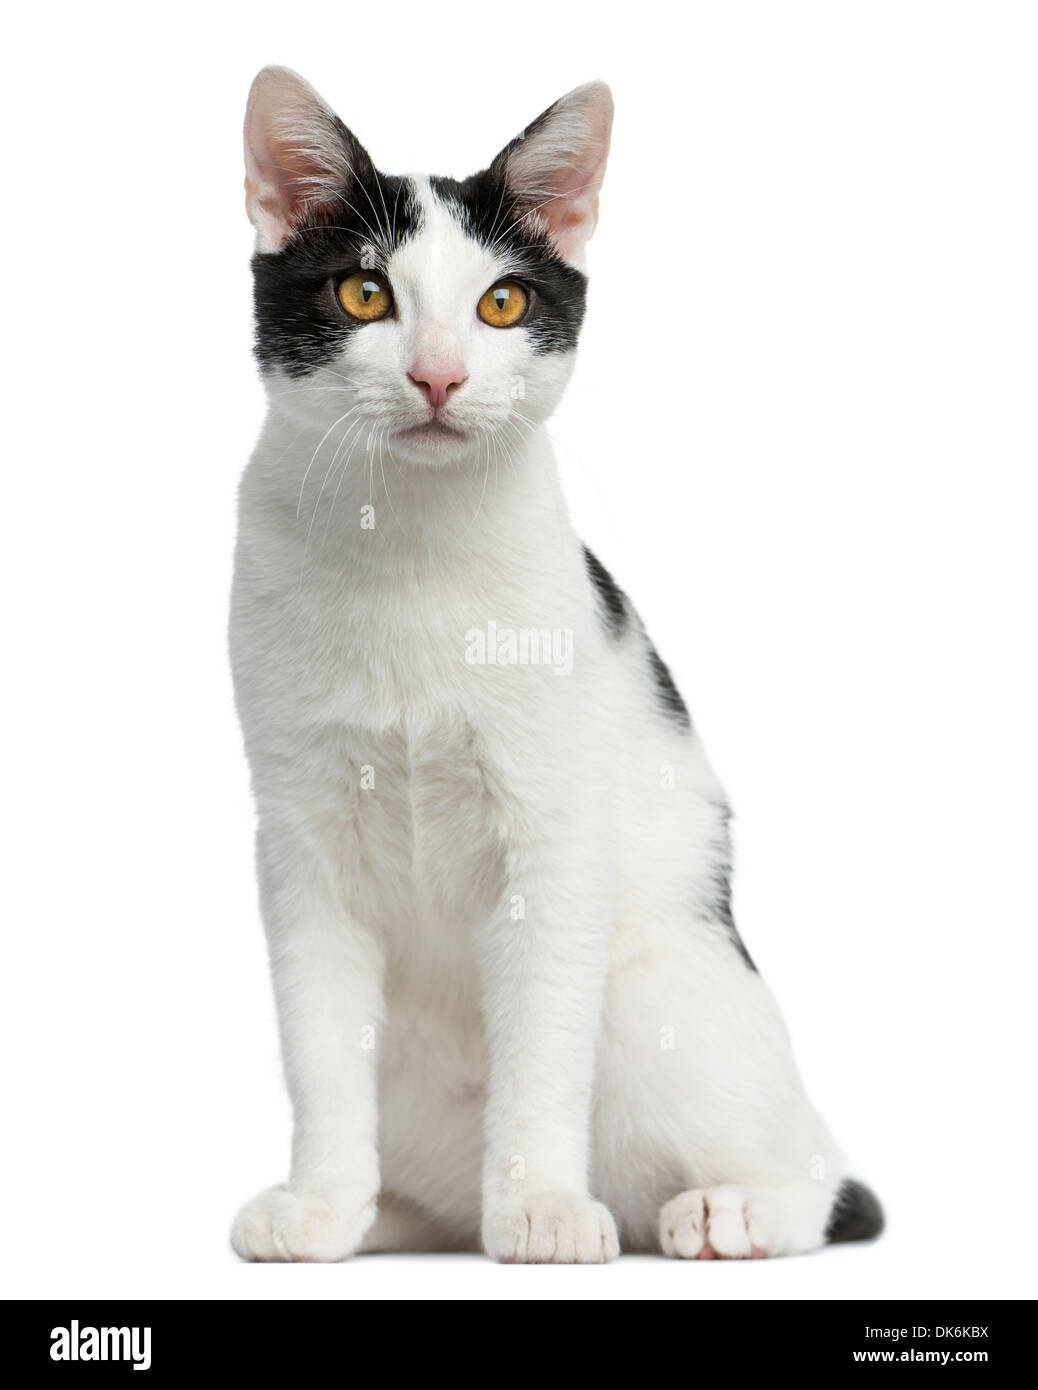 Vue frontale d'un European Shorthair chaton assis, âgé de 4 mois, contre fond blanc Banque D'Images